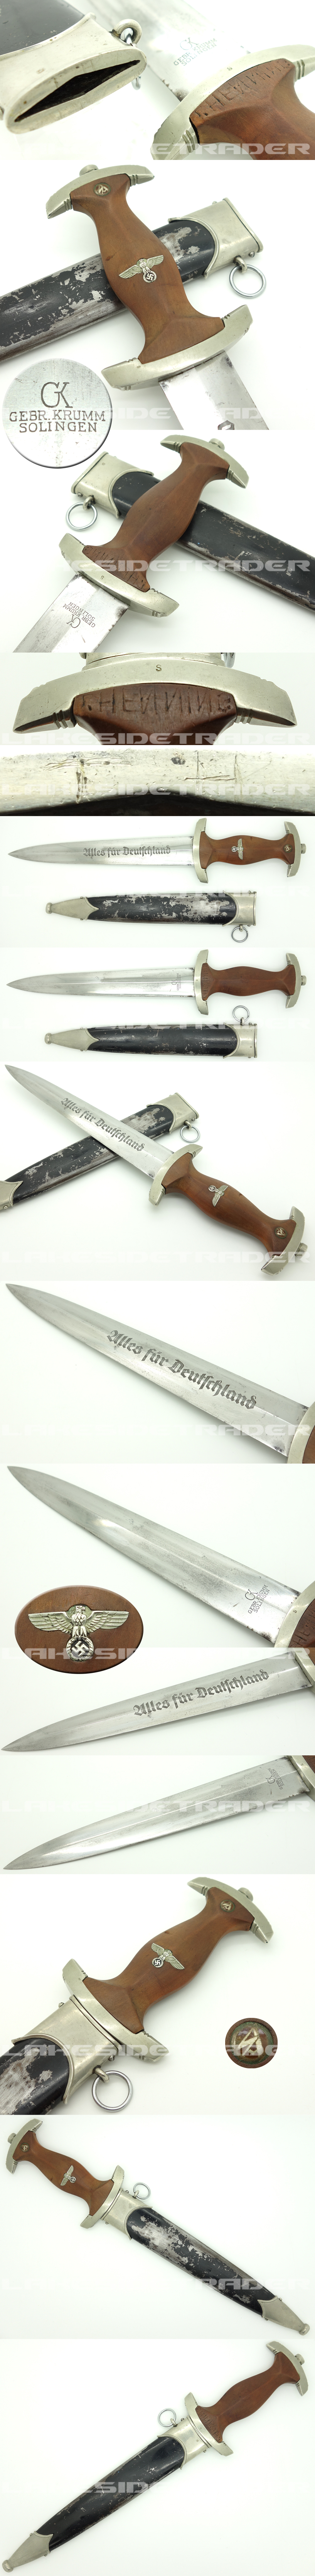 Personalized - Early NSKK Dagger by Gebr. Krumm